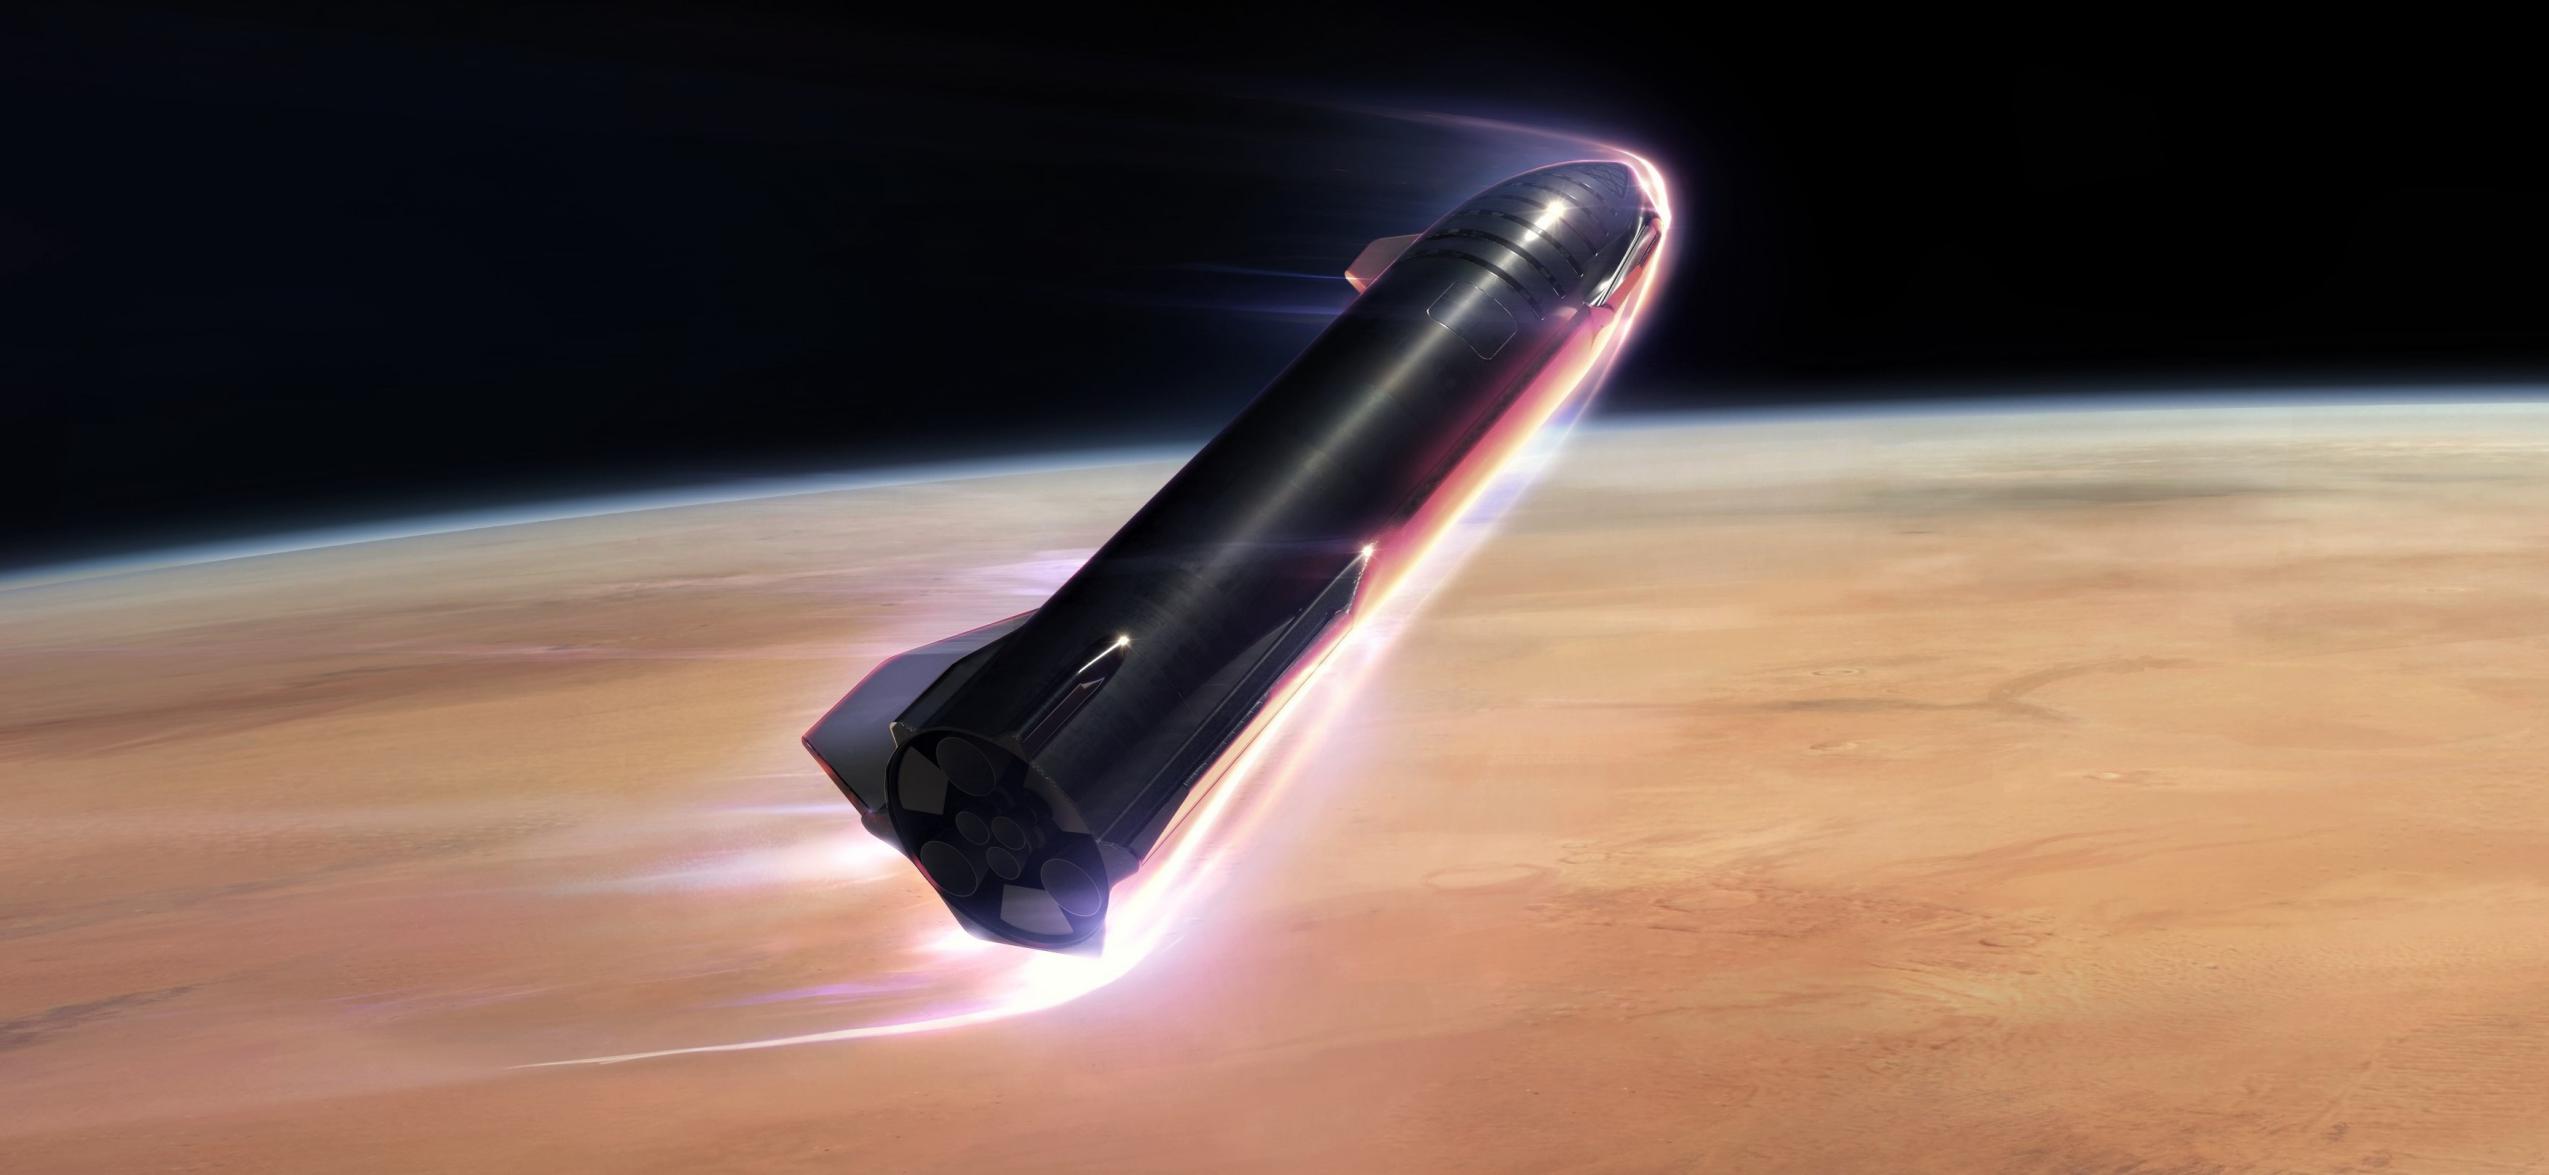 Starship 2019 Mars reentry render (SpaceX) 1 crop 3 (c)